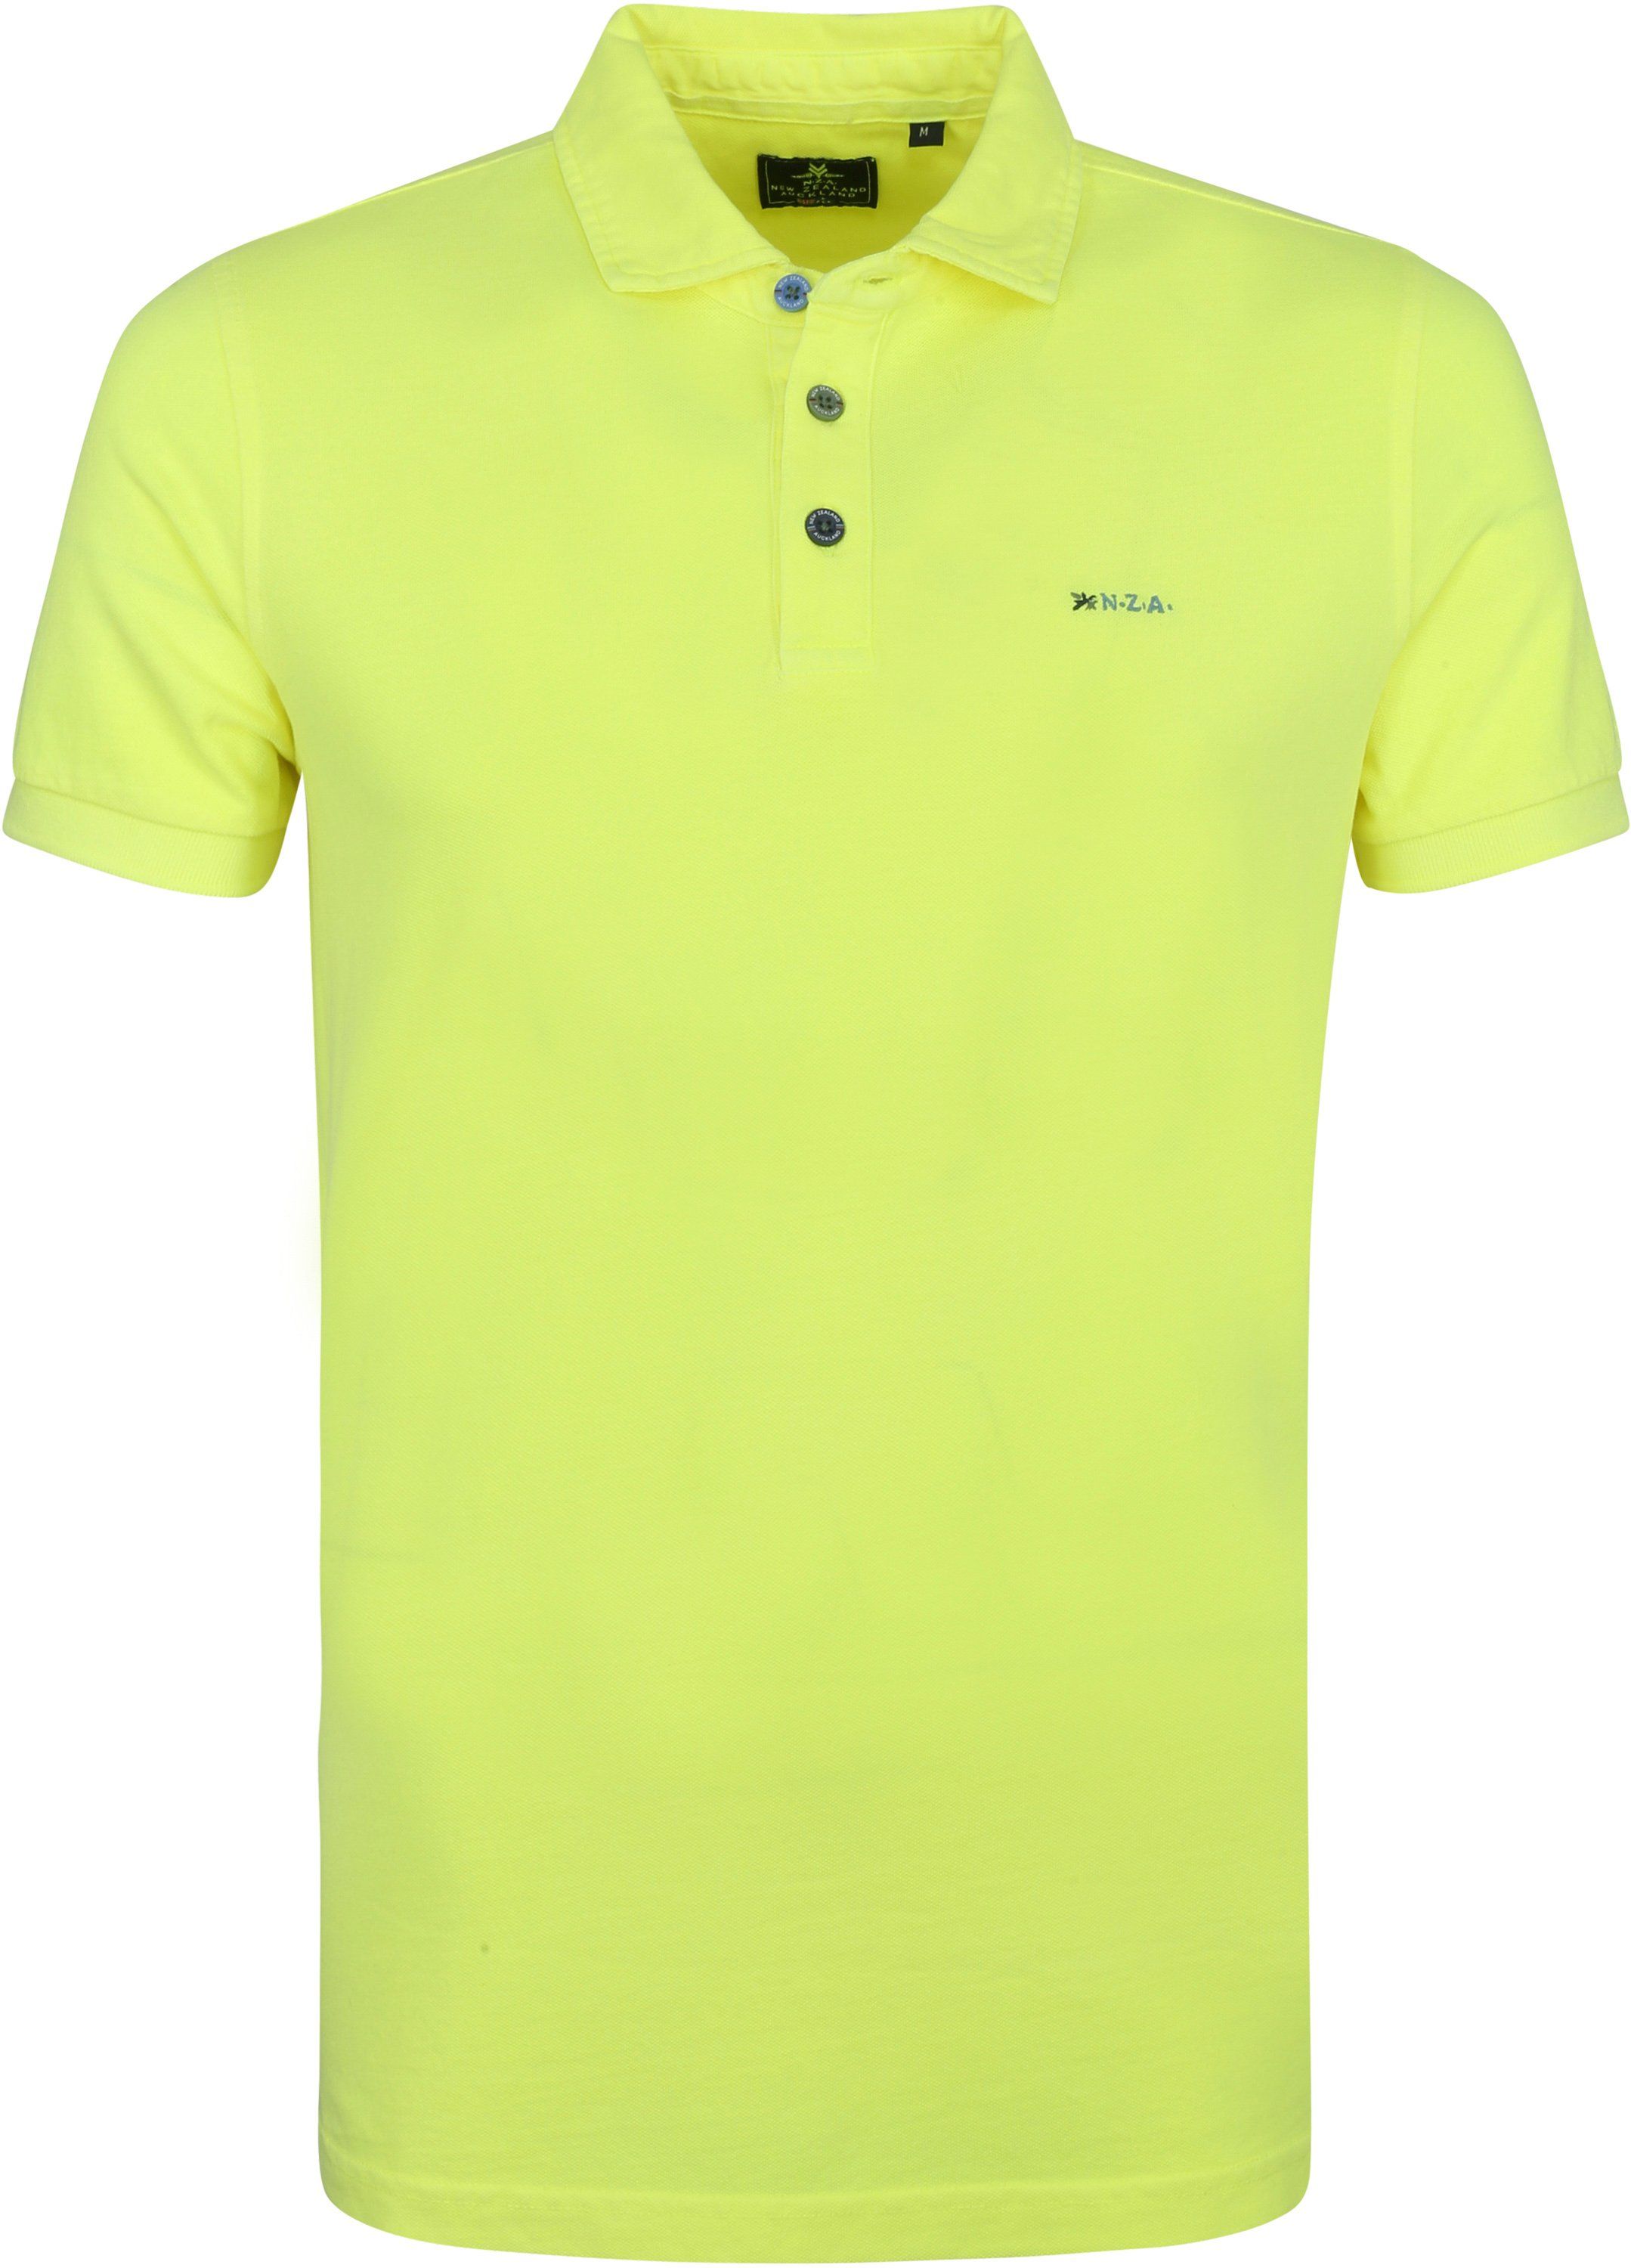 NZA Polo Shirt Moerewa Bright Yellow size 3XL